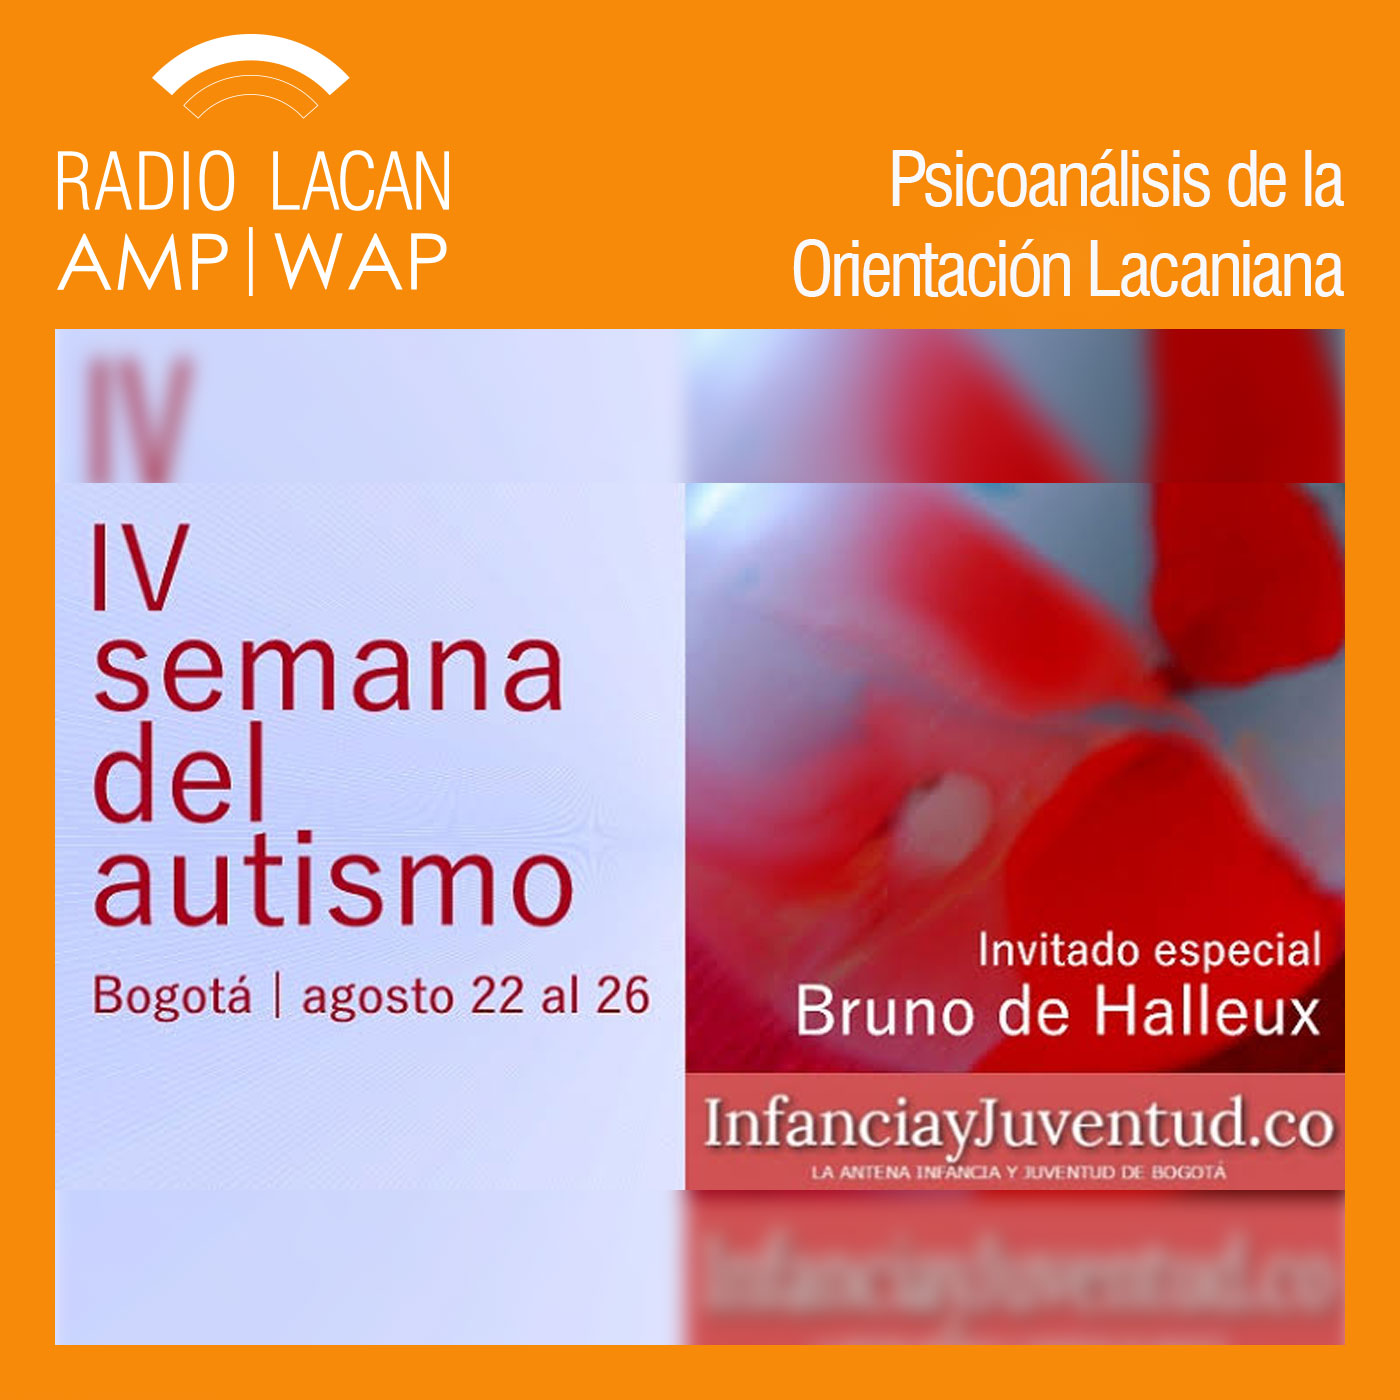 RadioLacan.com | Entrevista a Bruno de Halleux durante la IVº semana del autismo en Bogotá